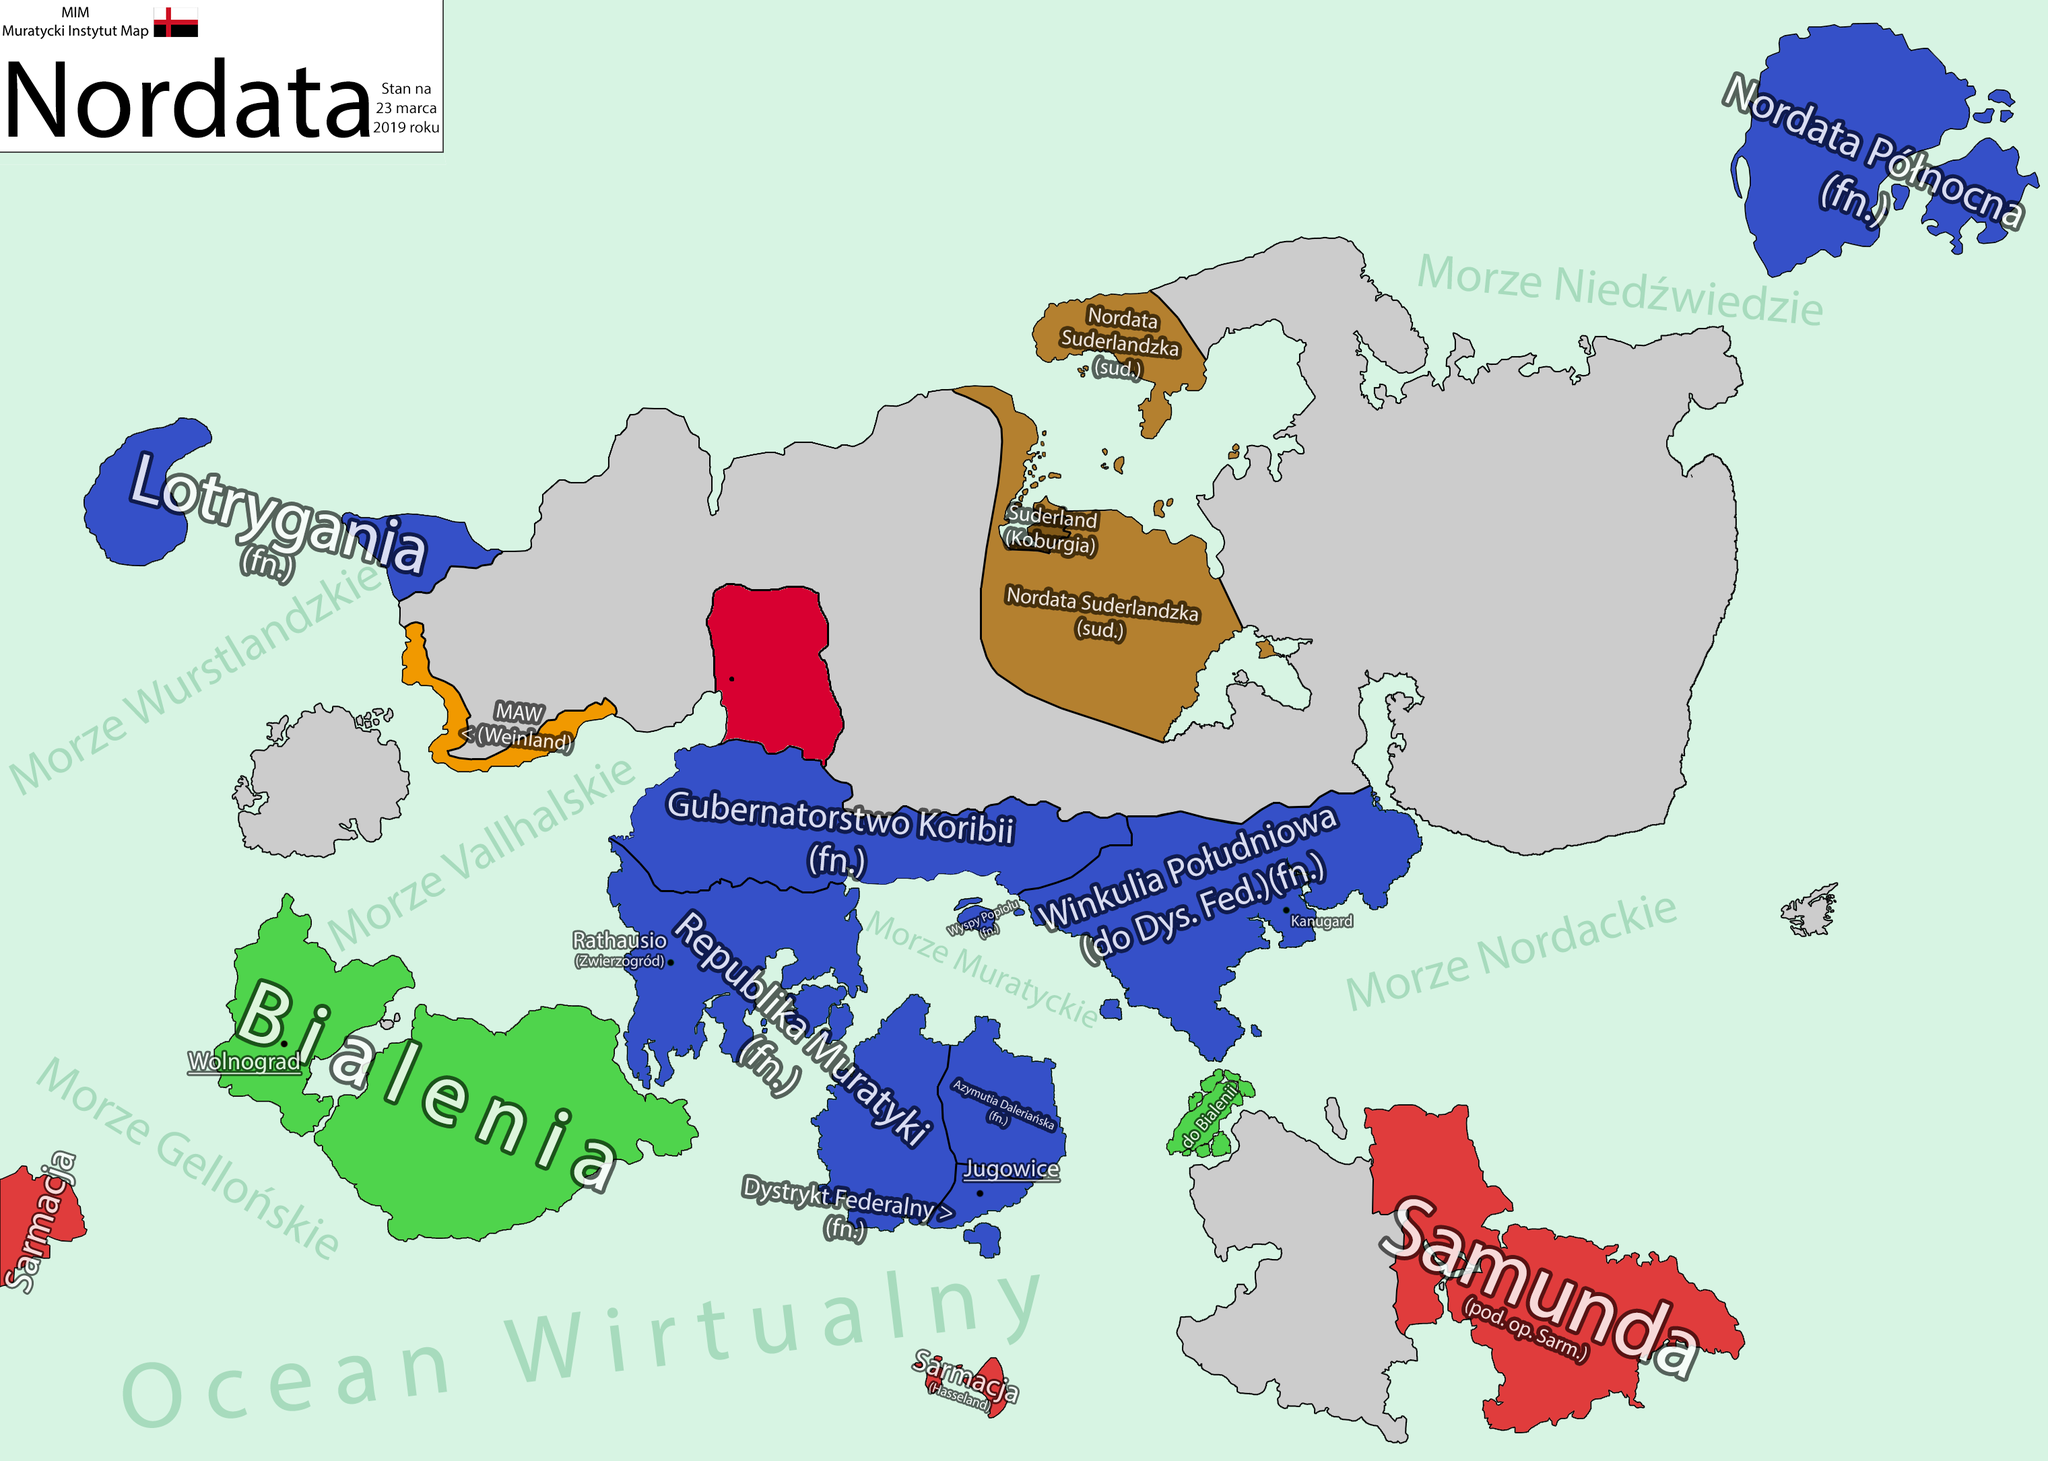 Mapa Magnifikatu z 23 marca 2019 r. Źródło: Muratycki Instytut Map